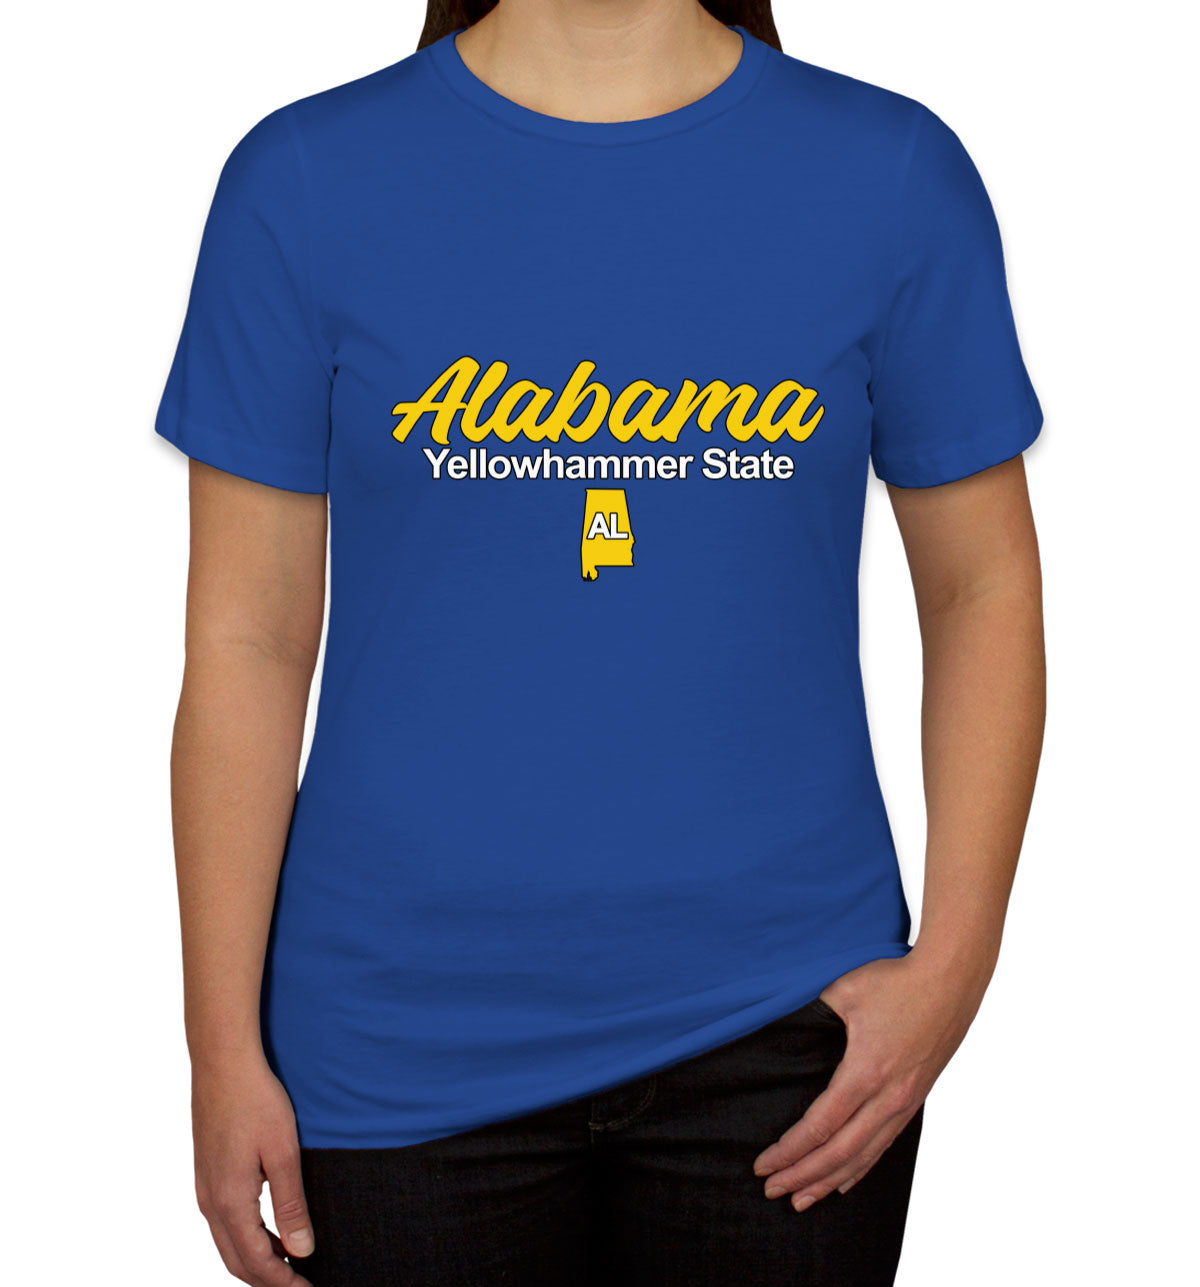 Alabama Yellowhammer State Women's T-shirt